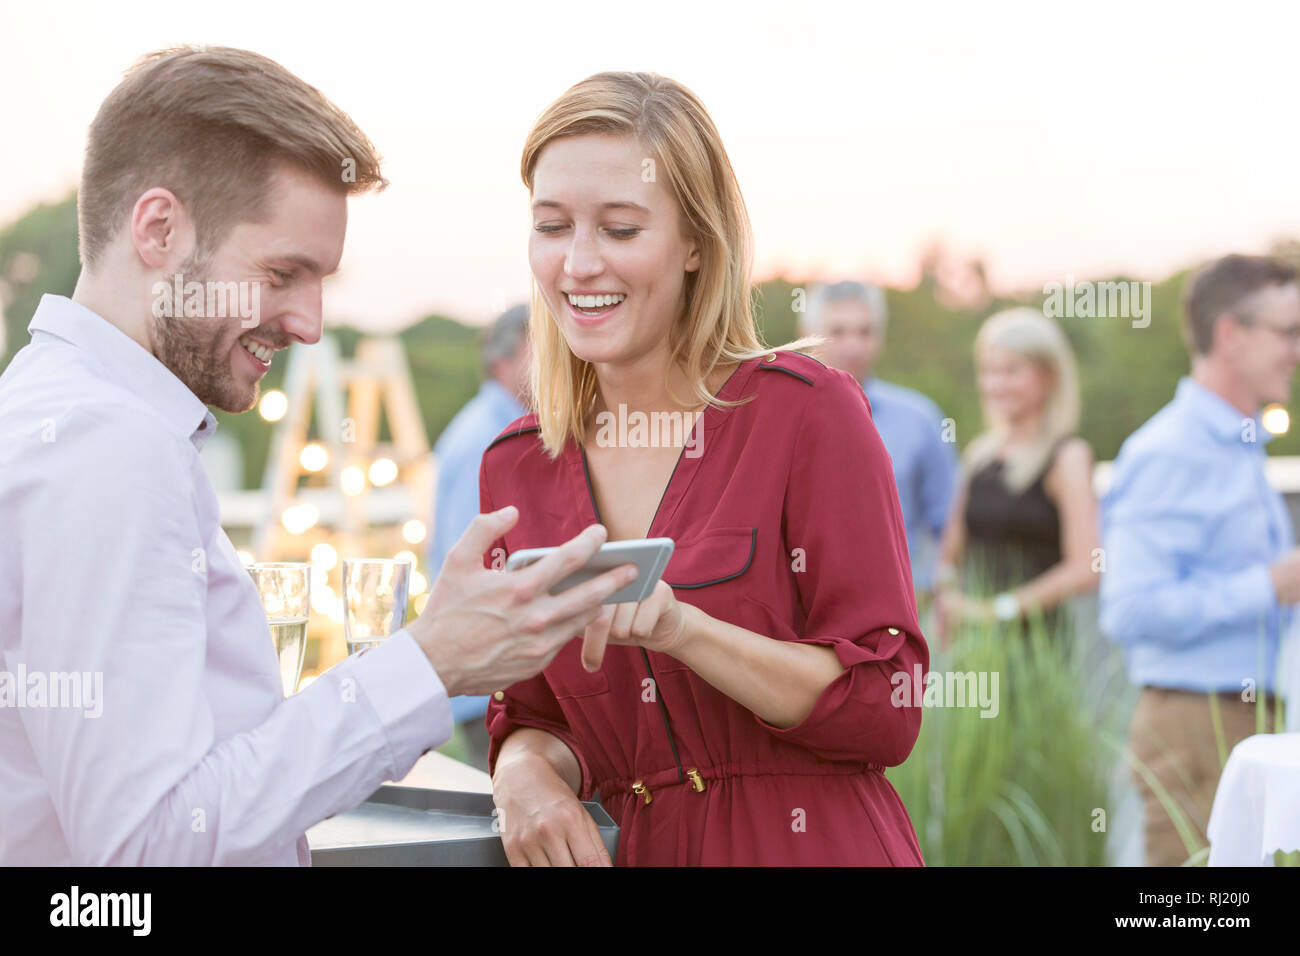 Smiling young woman partager smartphone avec businesswoman pendant party sur le toit Banque D'Images